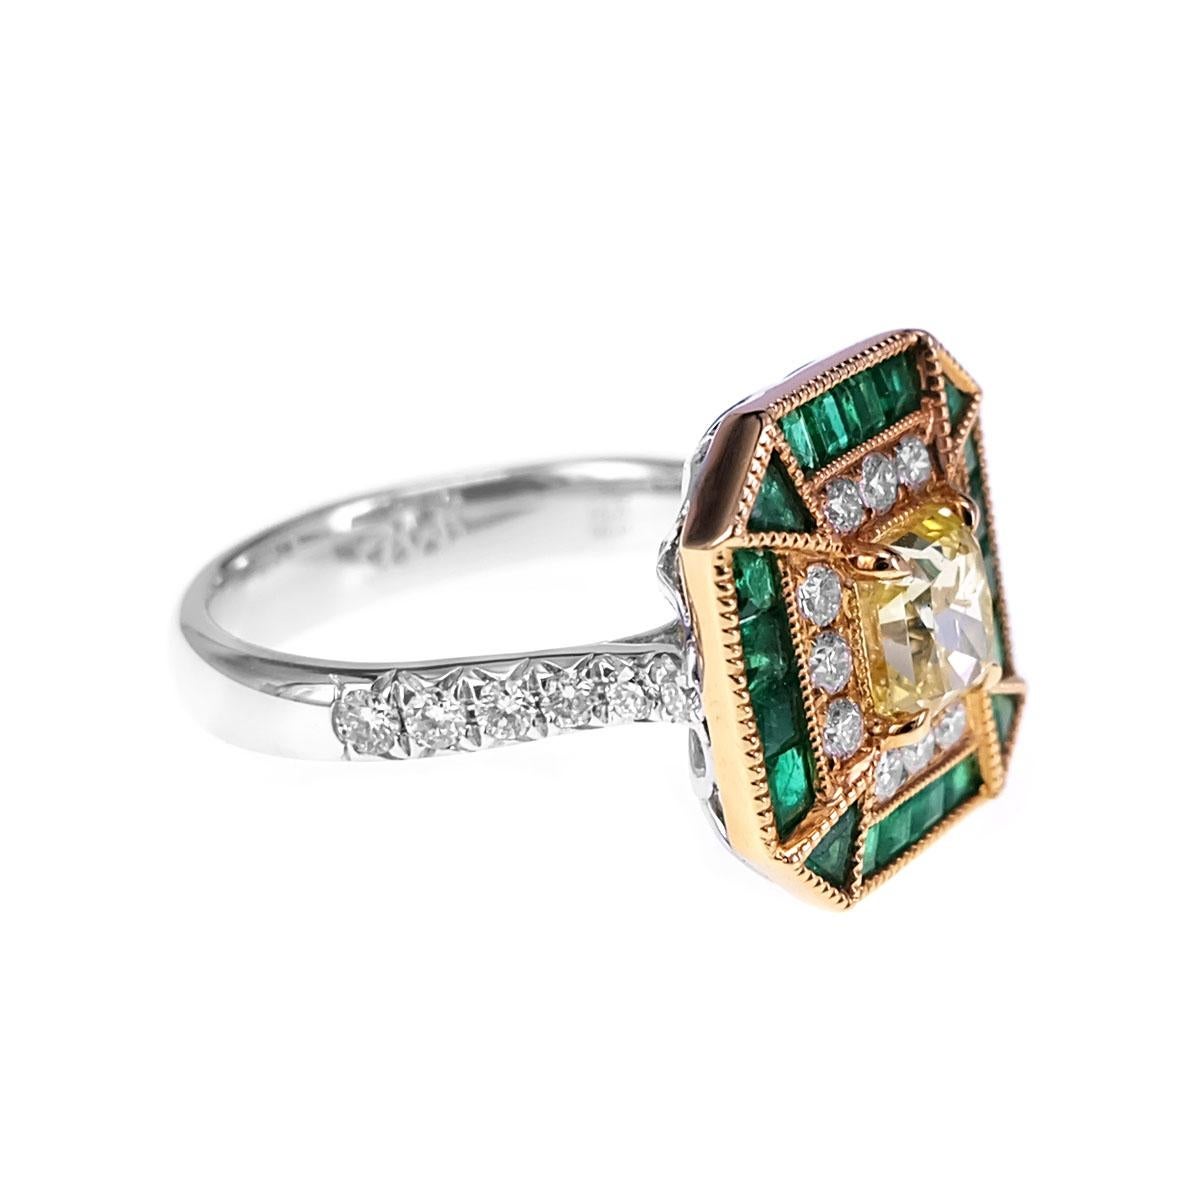 Un diamant Fancy Intense Yellow de 1,03 carat certifié par le GIA est serti avec 0,71 carat d'émeraude Vivid Green et 0,41 carat de diamant rond brillant blanc. Les détails de l'anneau sont mentionnés ci-dessous :
Couleur : F
Clarté : Vs
Taille de